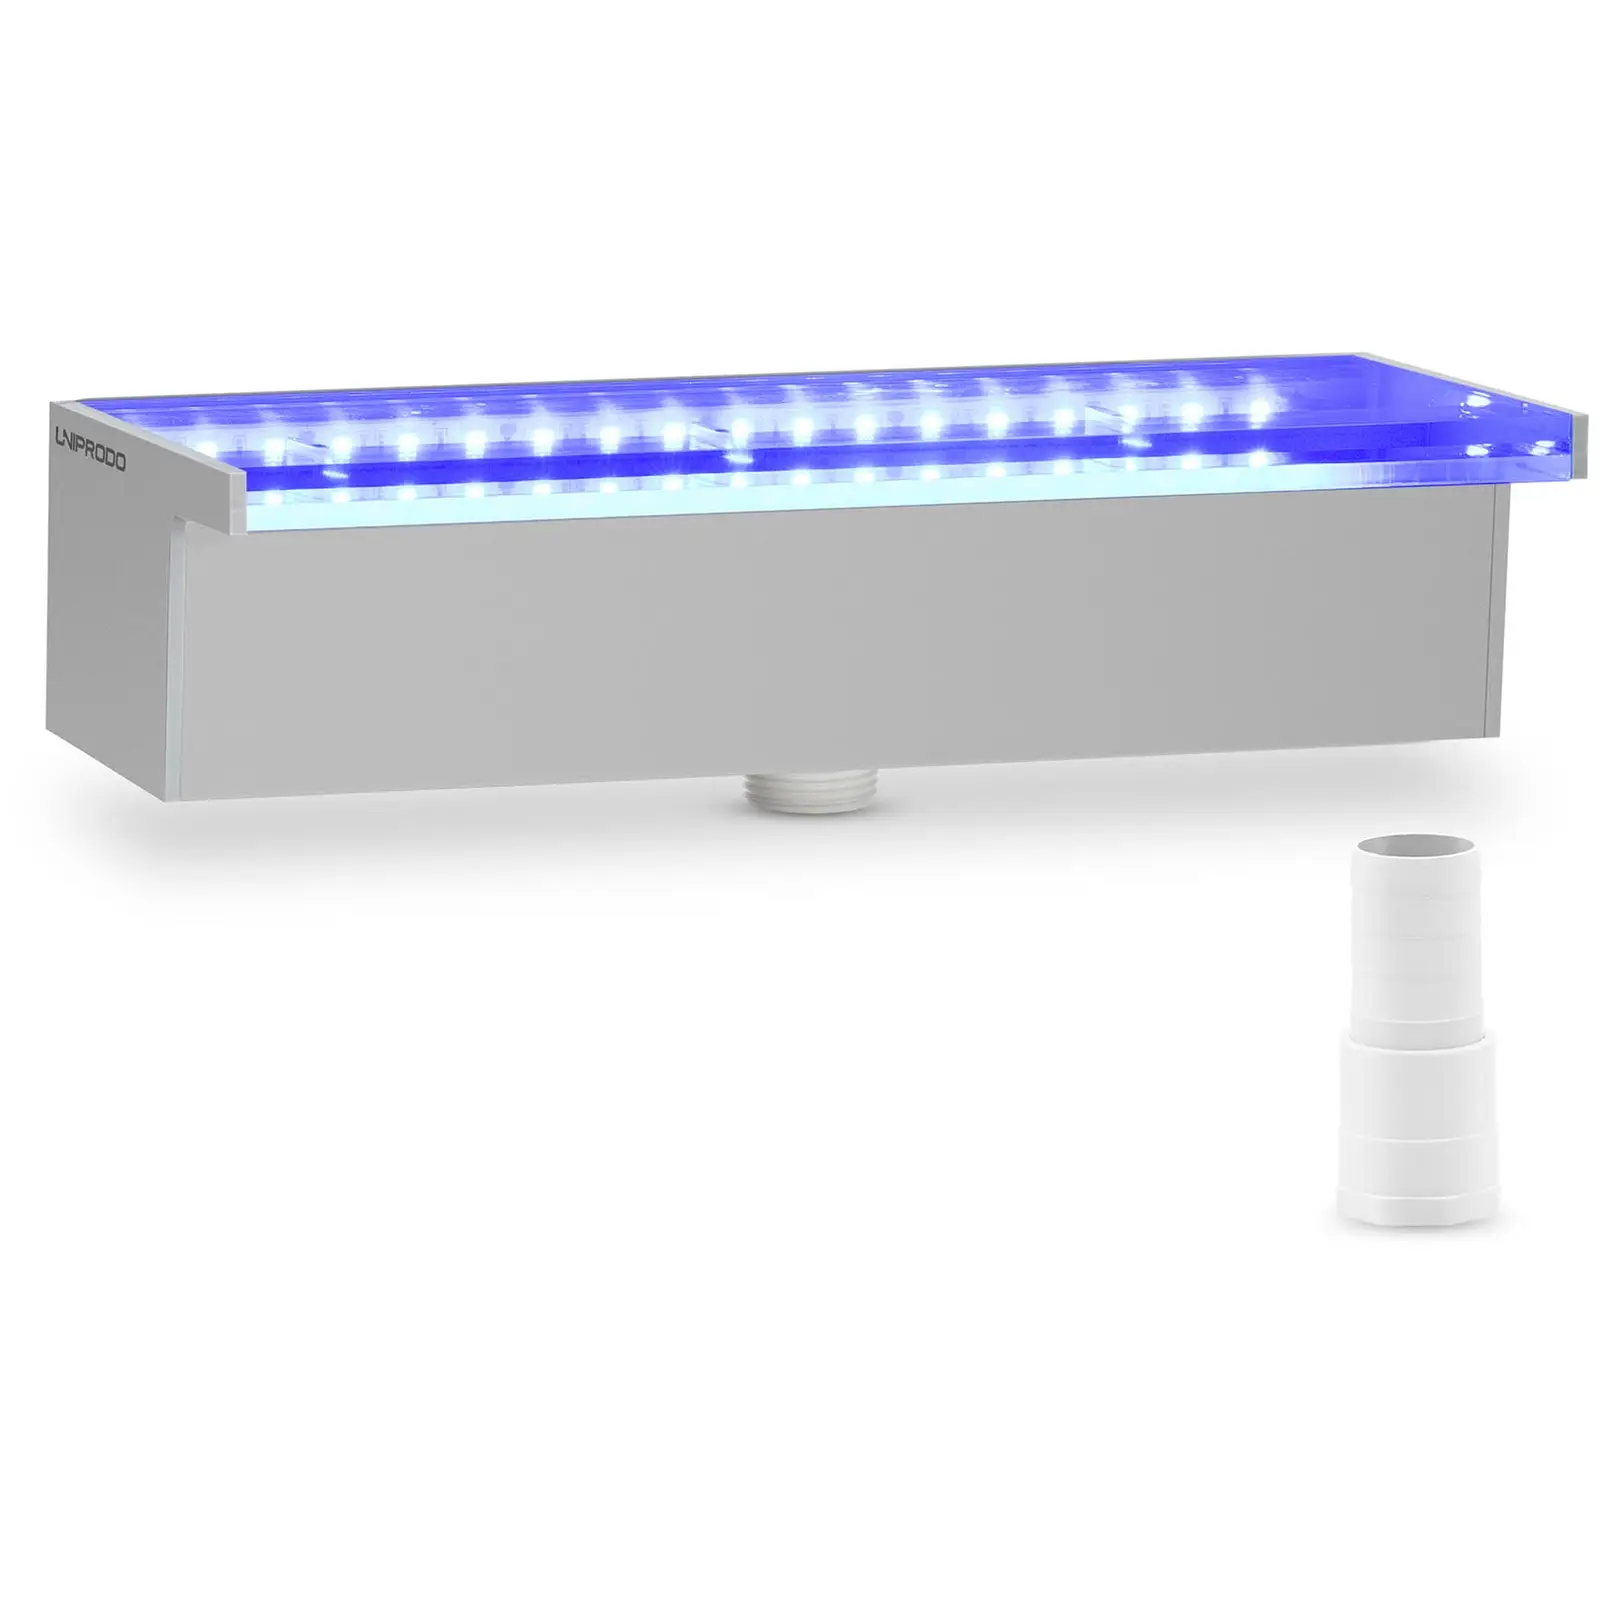 Cascada para piscina - 30 cm - Iluminación LED - azul/blanco - salida de agua: 30 mm